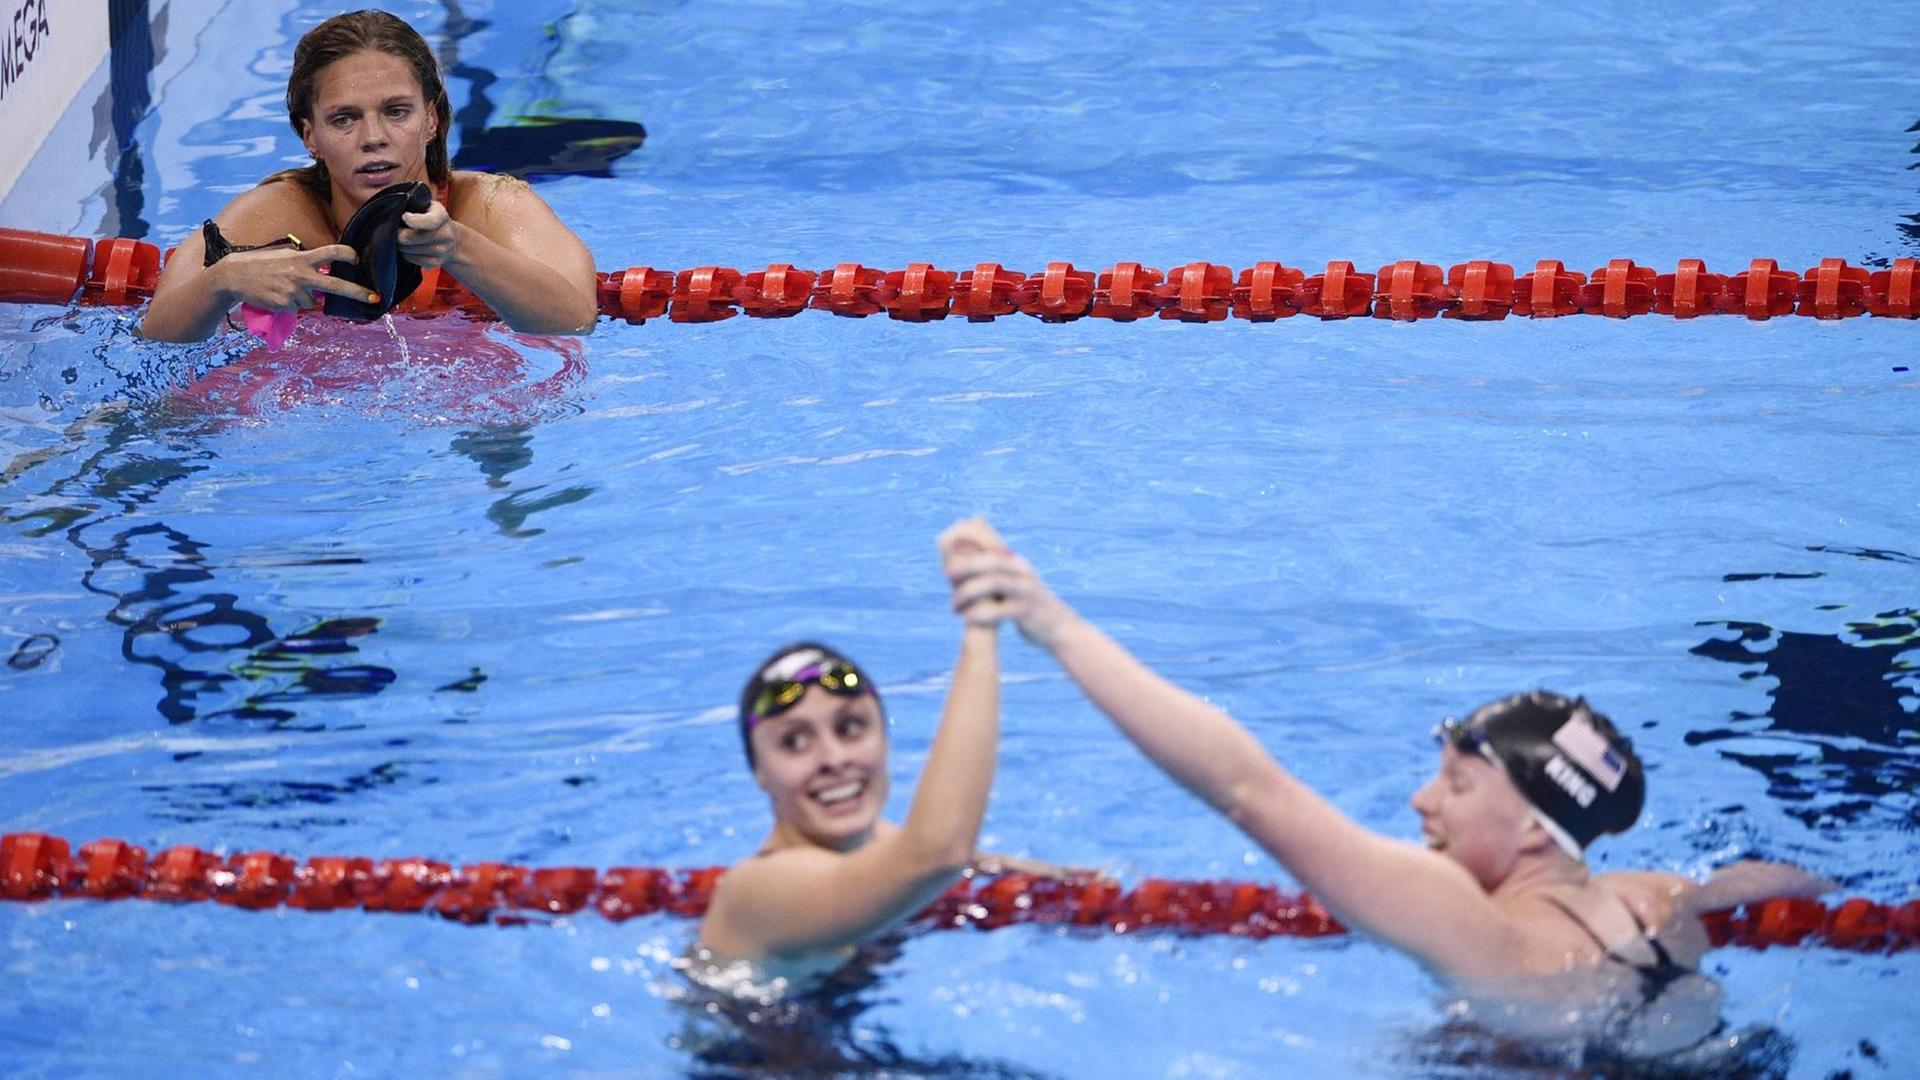 Die Schwimmerinnnen Lilly King und Karie Meili klatschen sich im Becken ab, Julia Jefimowa bleibt außen vor.